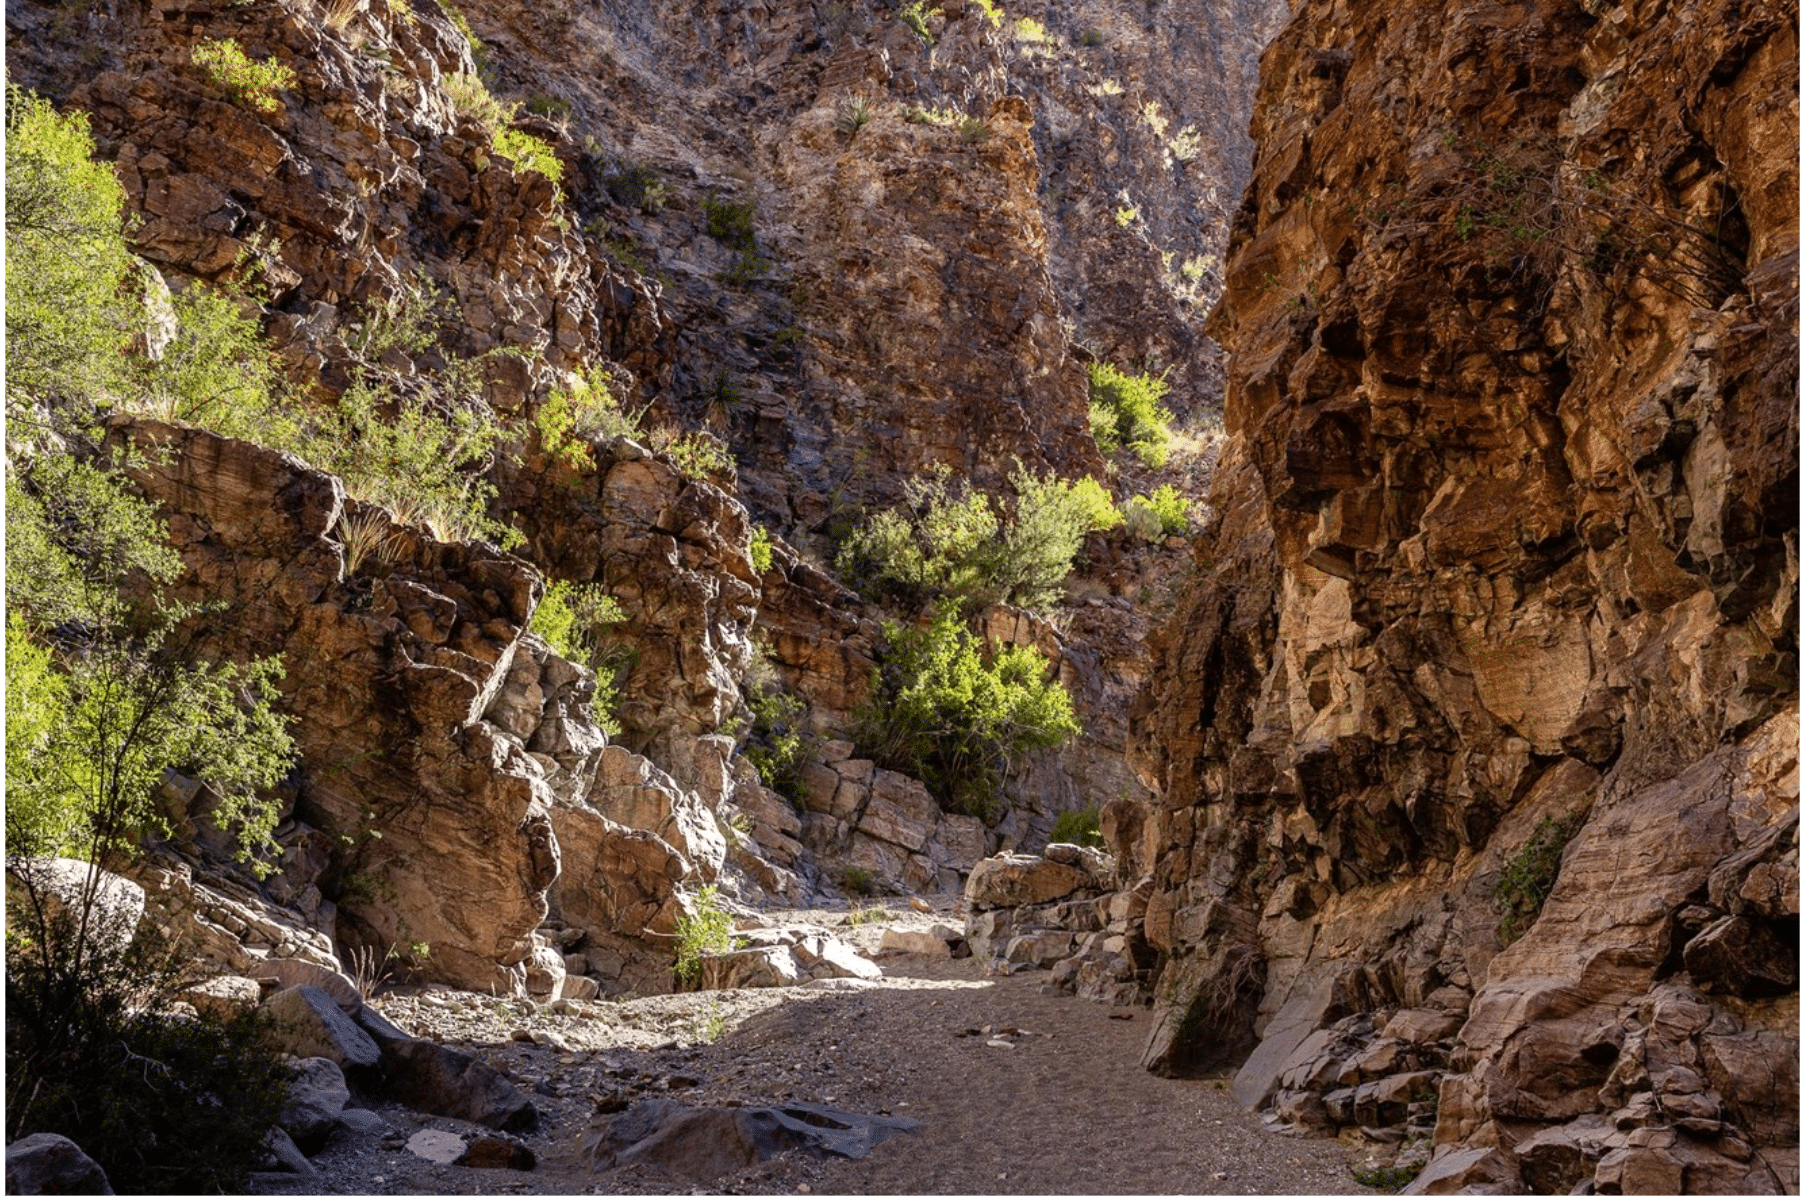 The Upper Burro Mesa Pouroff Trail follows a sandy wash through steep canyon walls.